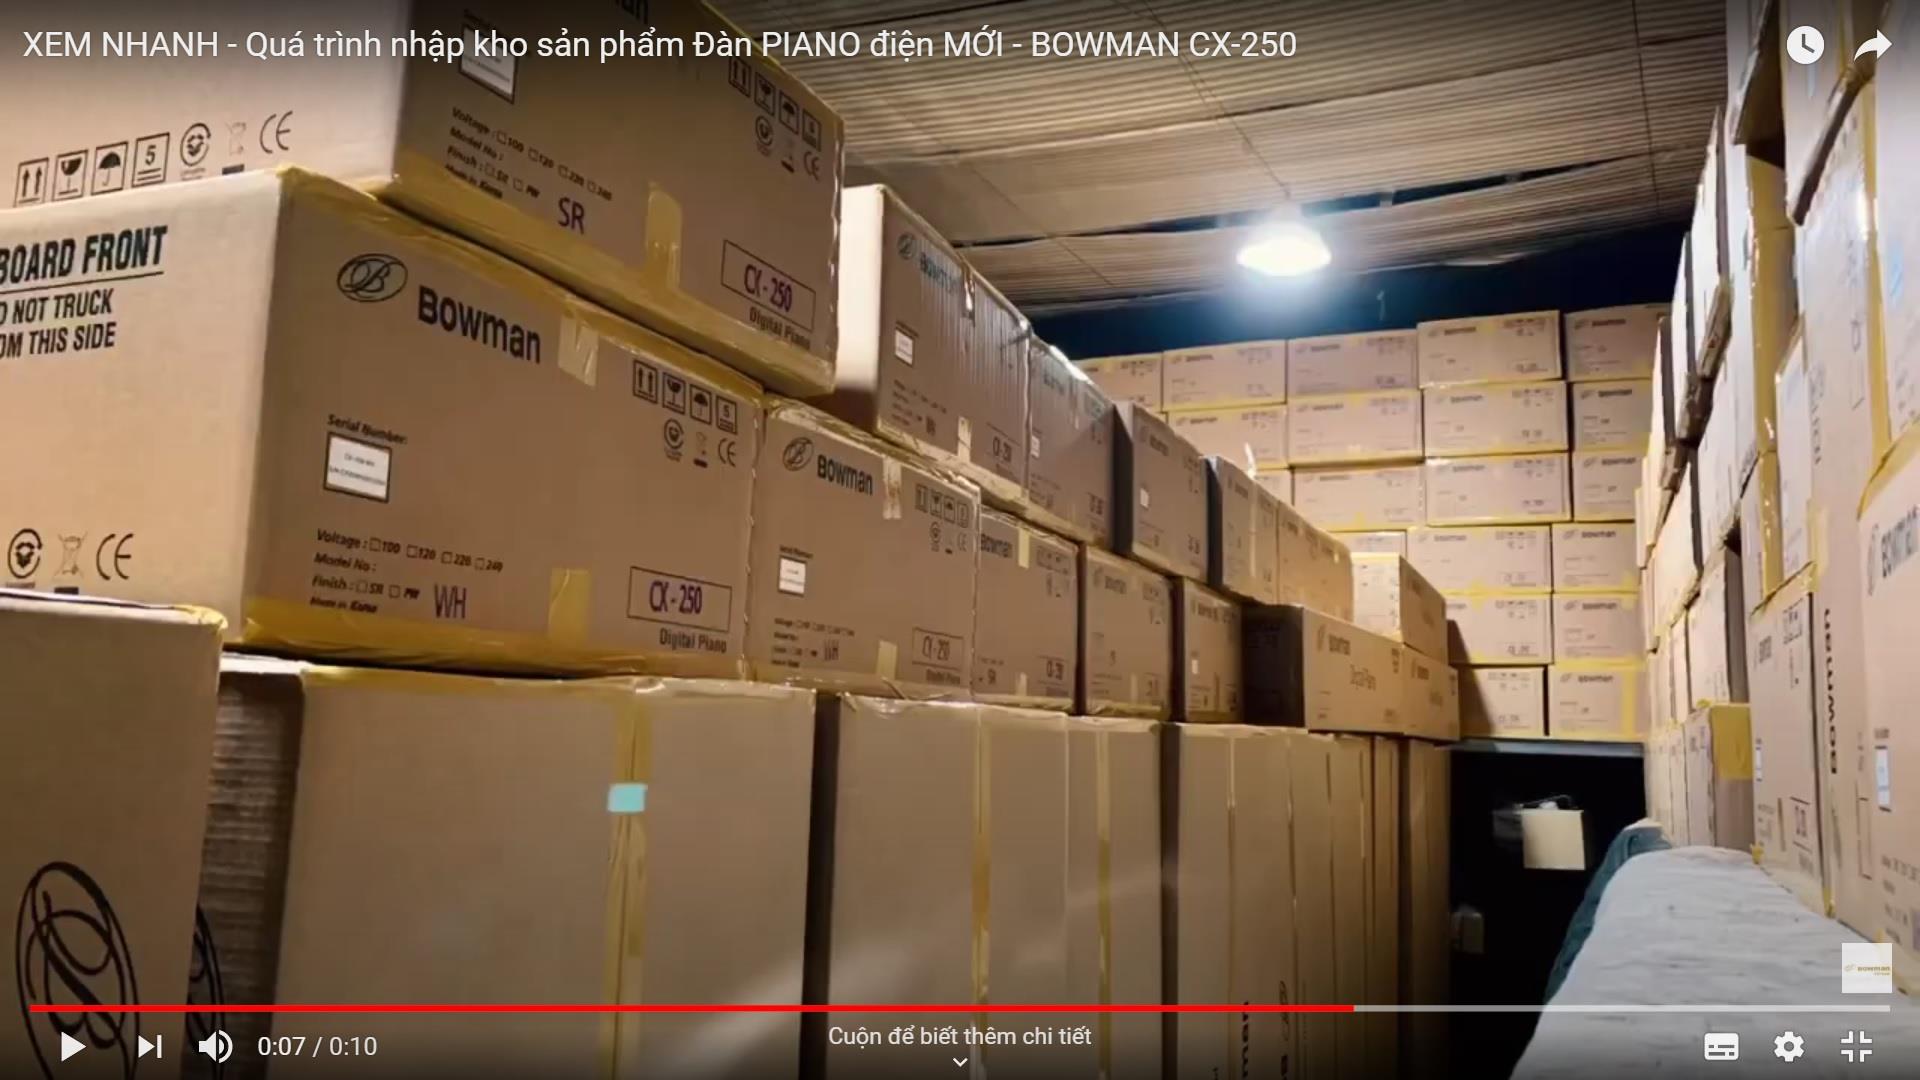 XEM NHANH - Quá trình nhập kho sản phẩm Đàn PIANO điện MỚI - BOWMAN CX-250